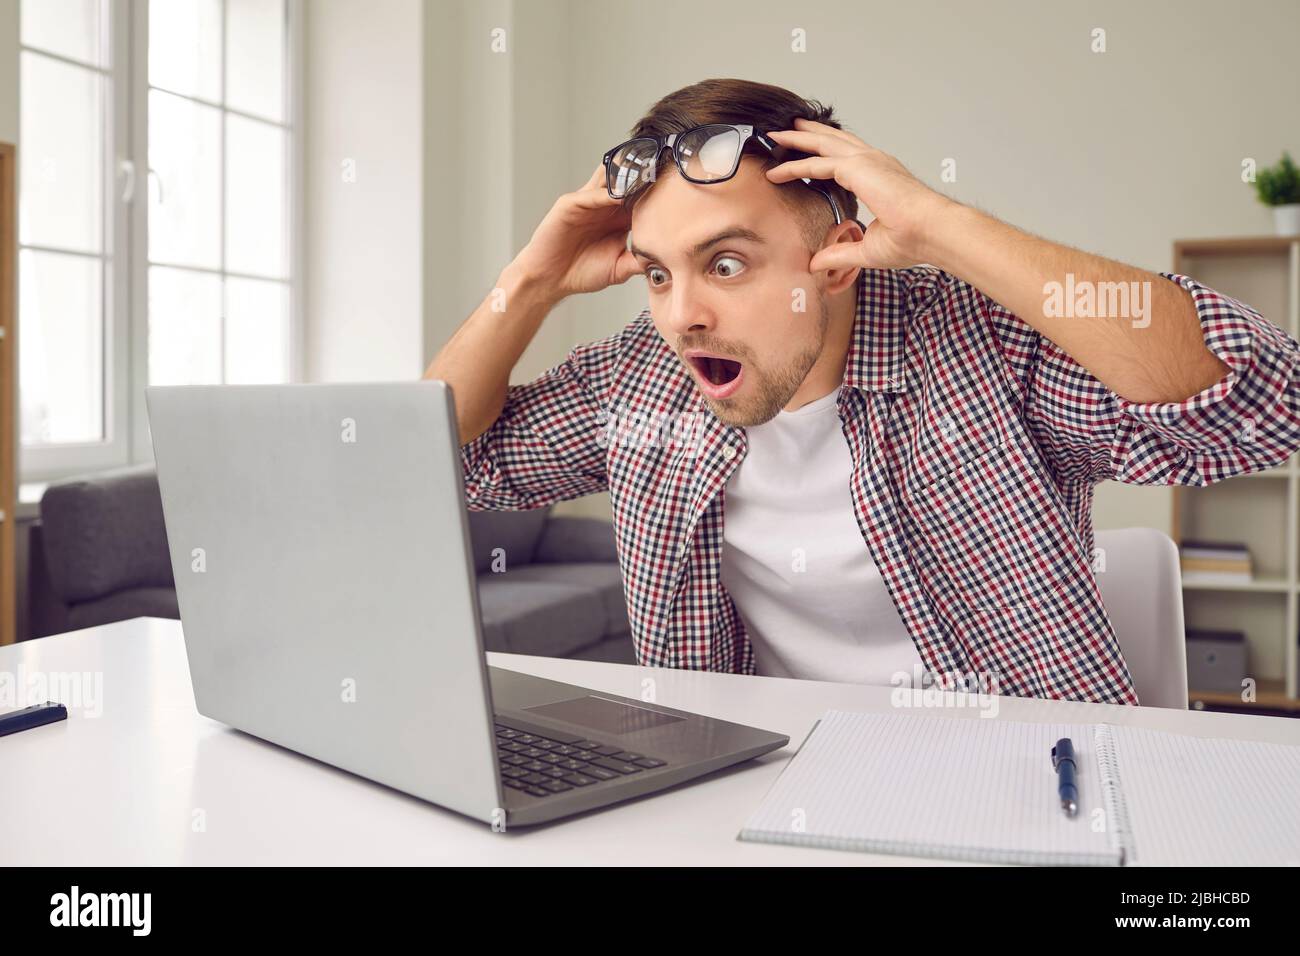 Un homme enthousiaste et étourdi, avec une expression choquée, lit les e-mails sur l'écran d'un ordinateur portable avec une proposition favorable. Banque D'Images